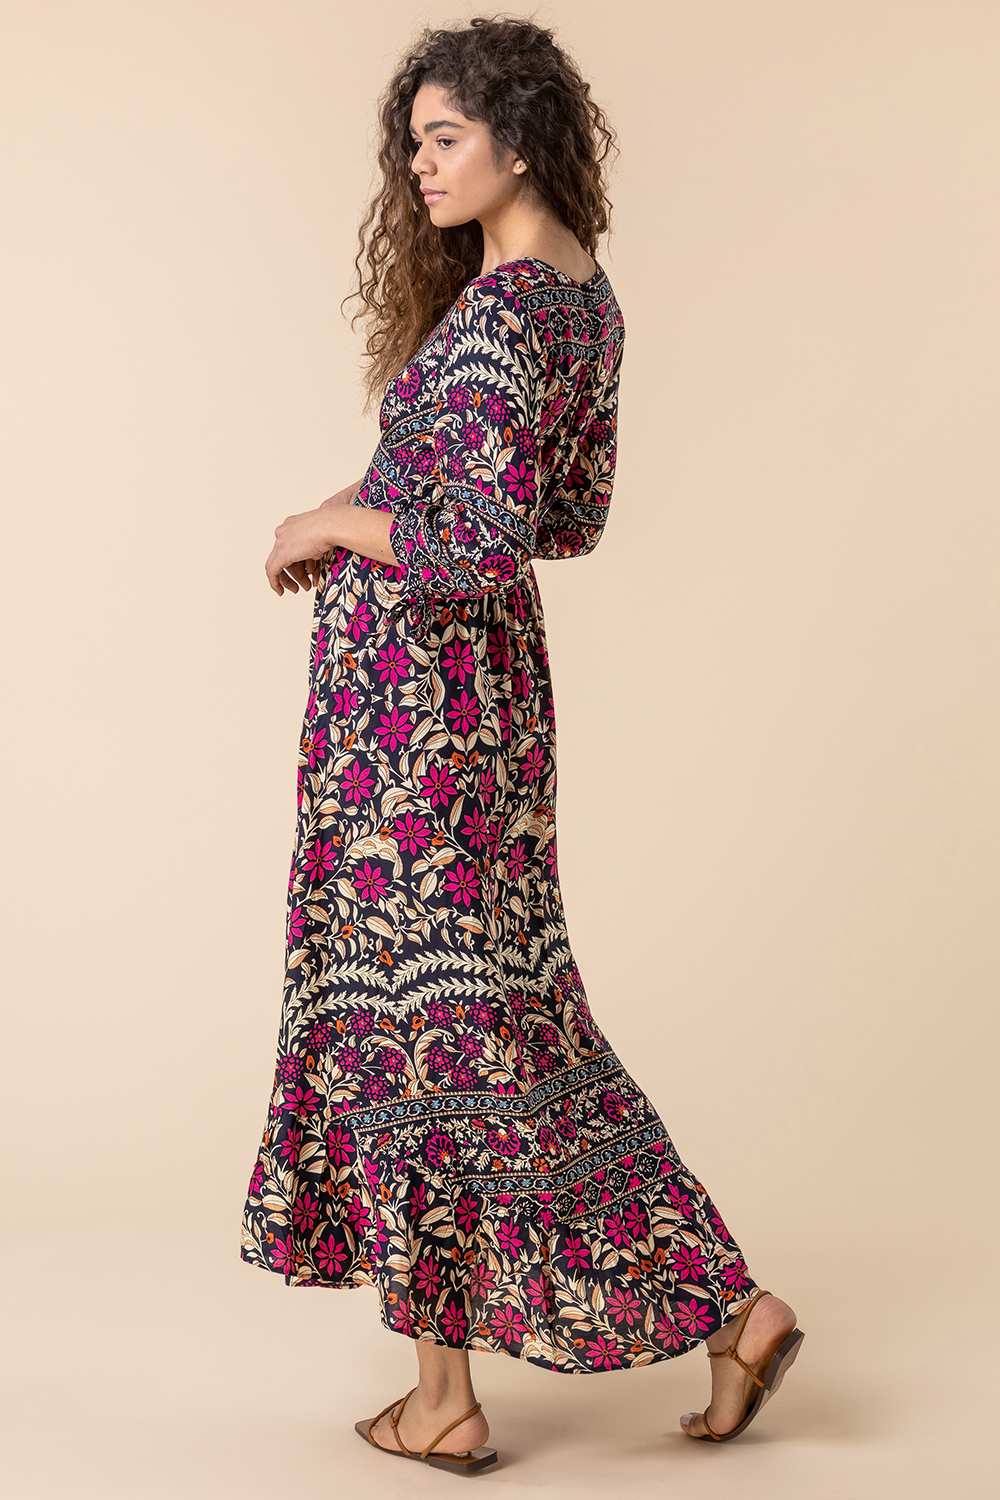 Floral Border Print Maxi Dress in Magenta - Roman Originals UK